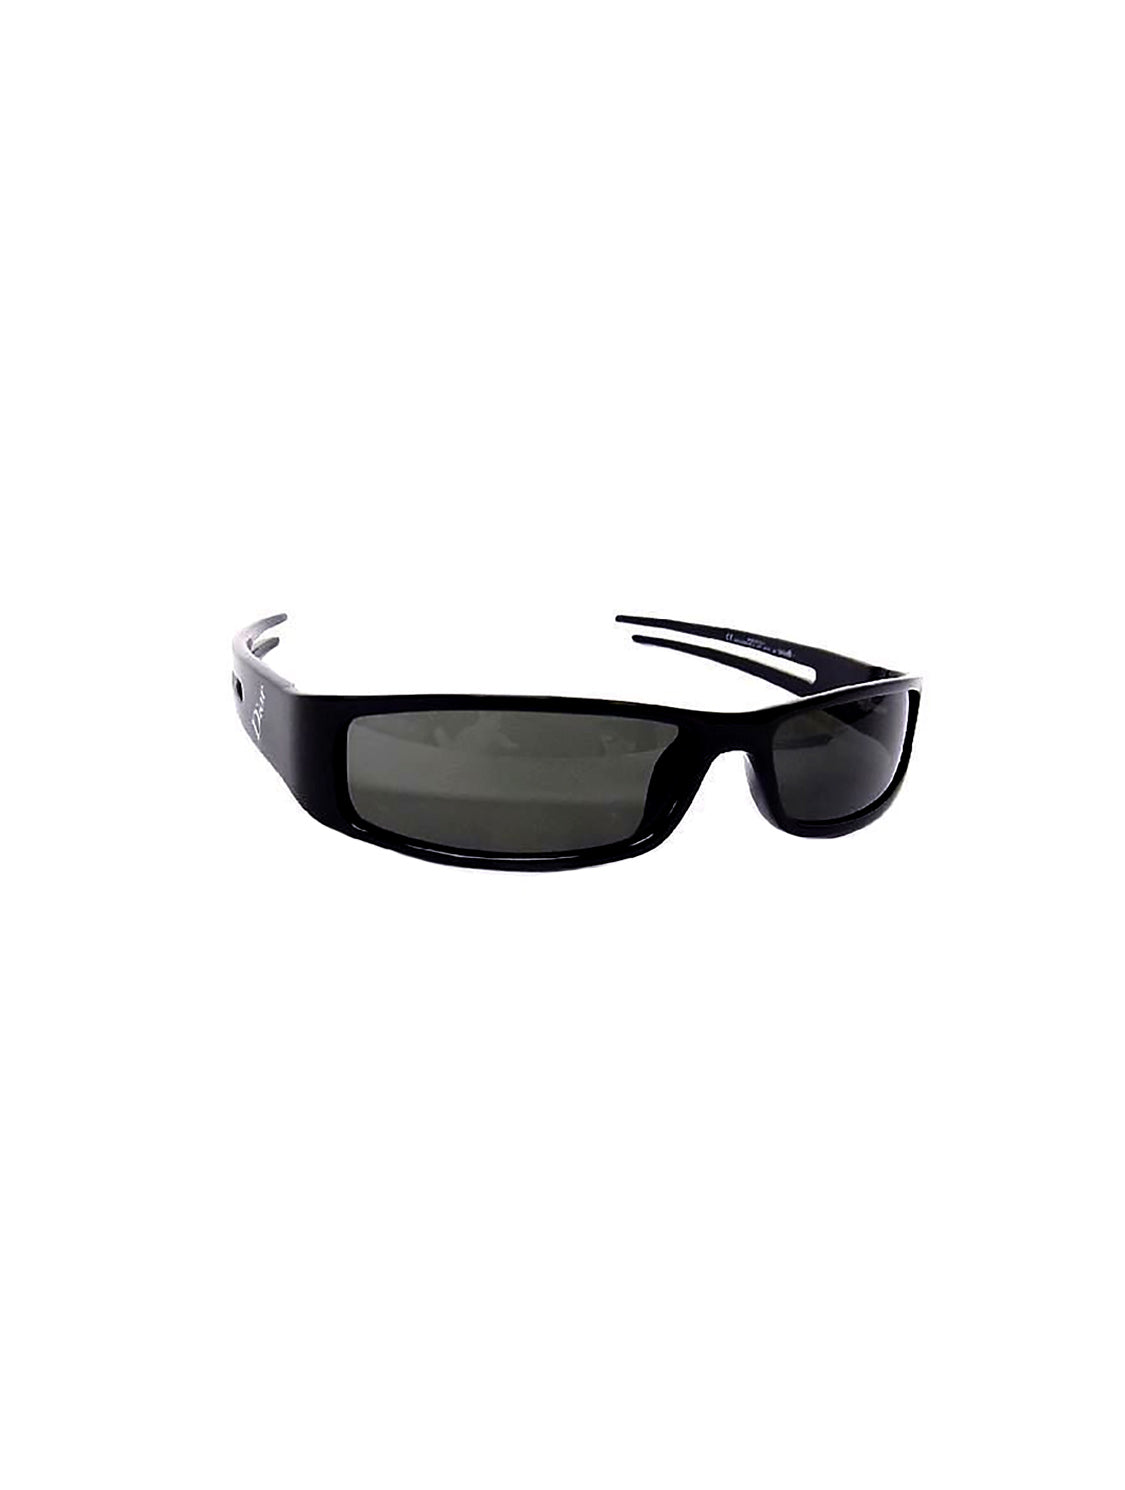 30Montaigne SU Oversized Black Square Sunglasses  DIOR